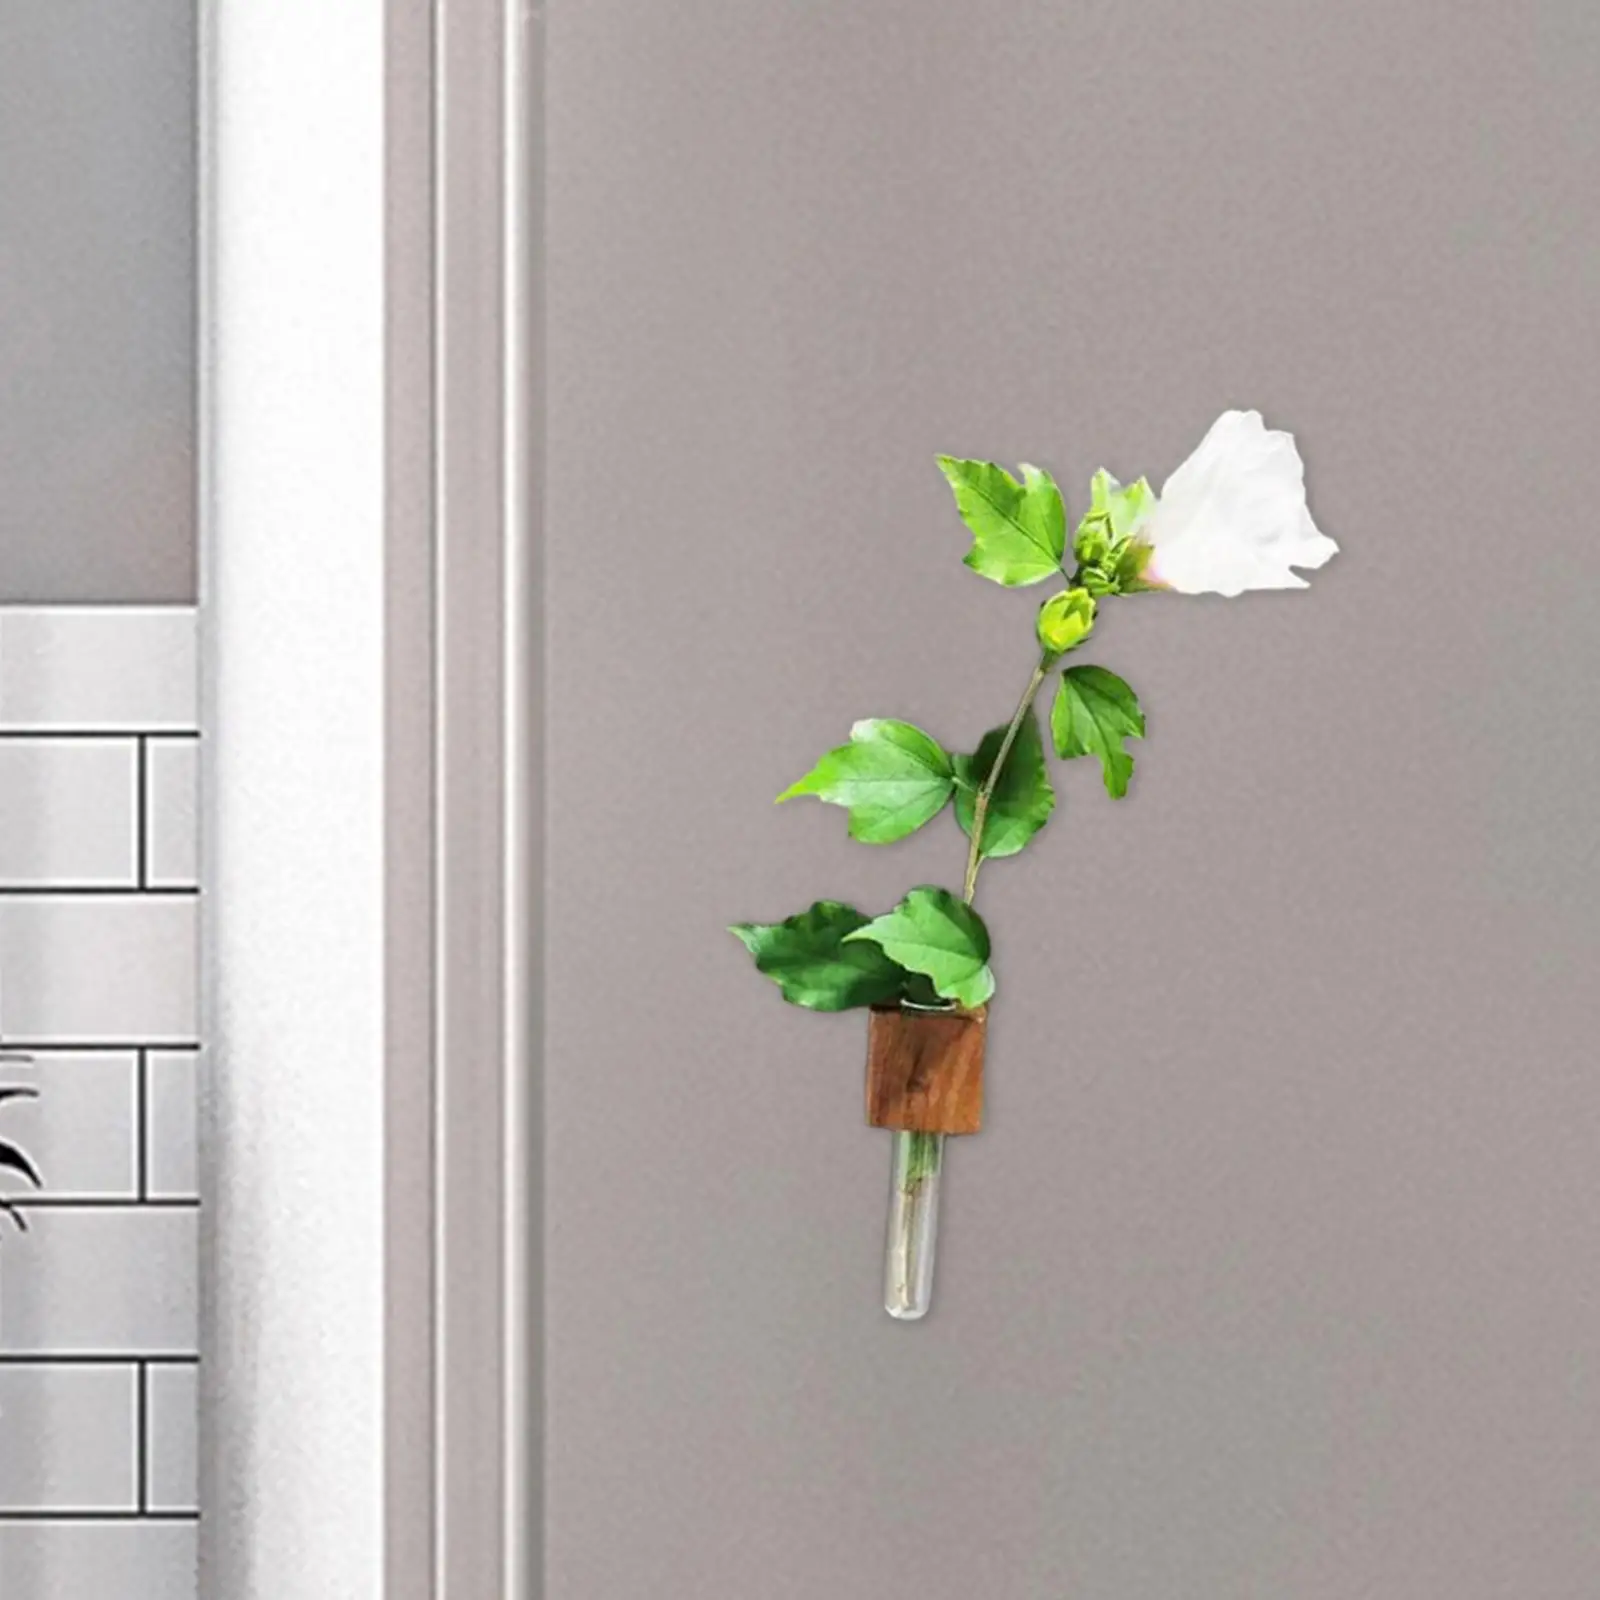 Mini Wood Fridge Vase Magnet Cute Glass Tube for Refrigerator Office Bedroom